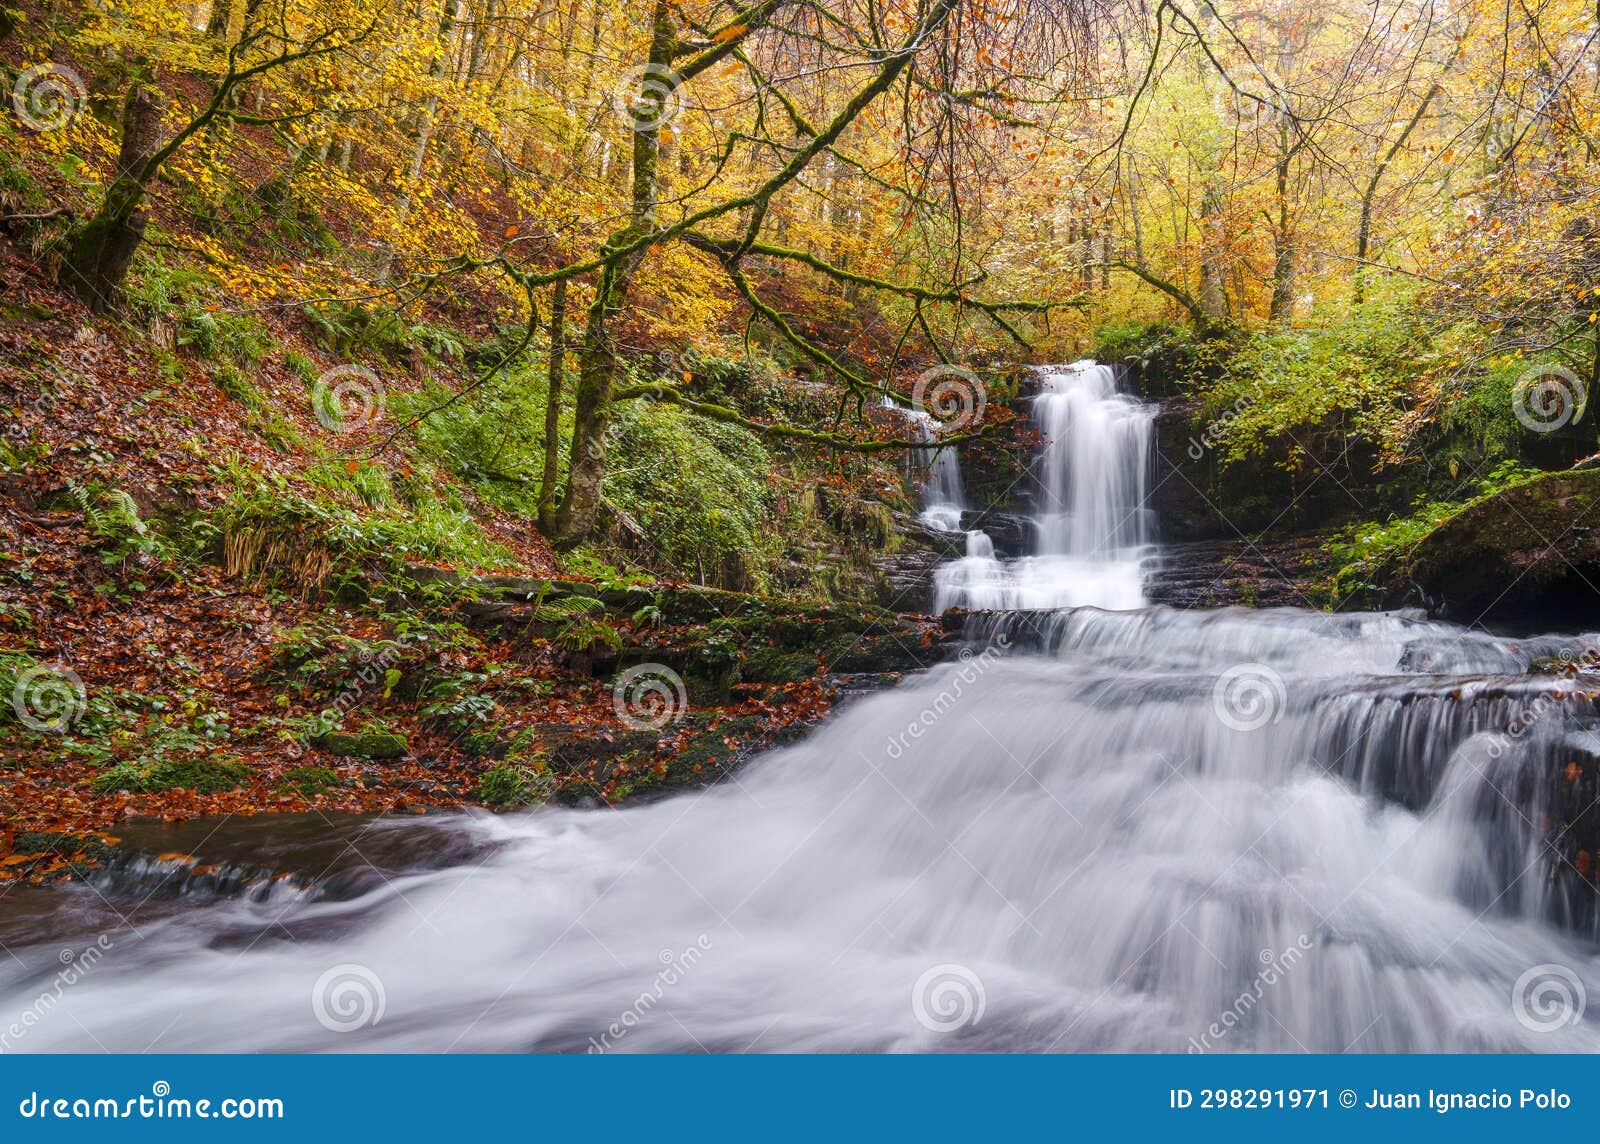 irurrekaeta waterfall, autumn in the irurrekaeta waterfall, arce valley, navarre